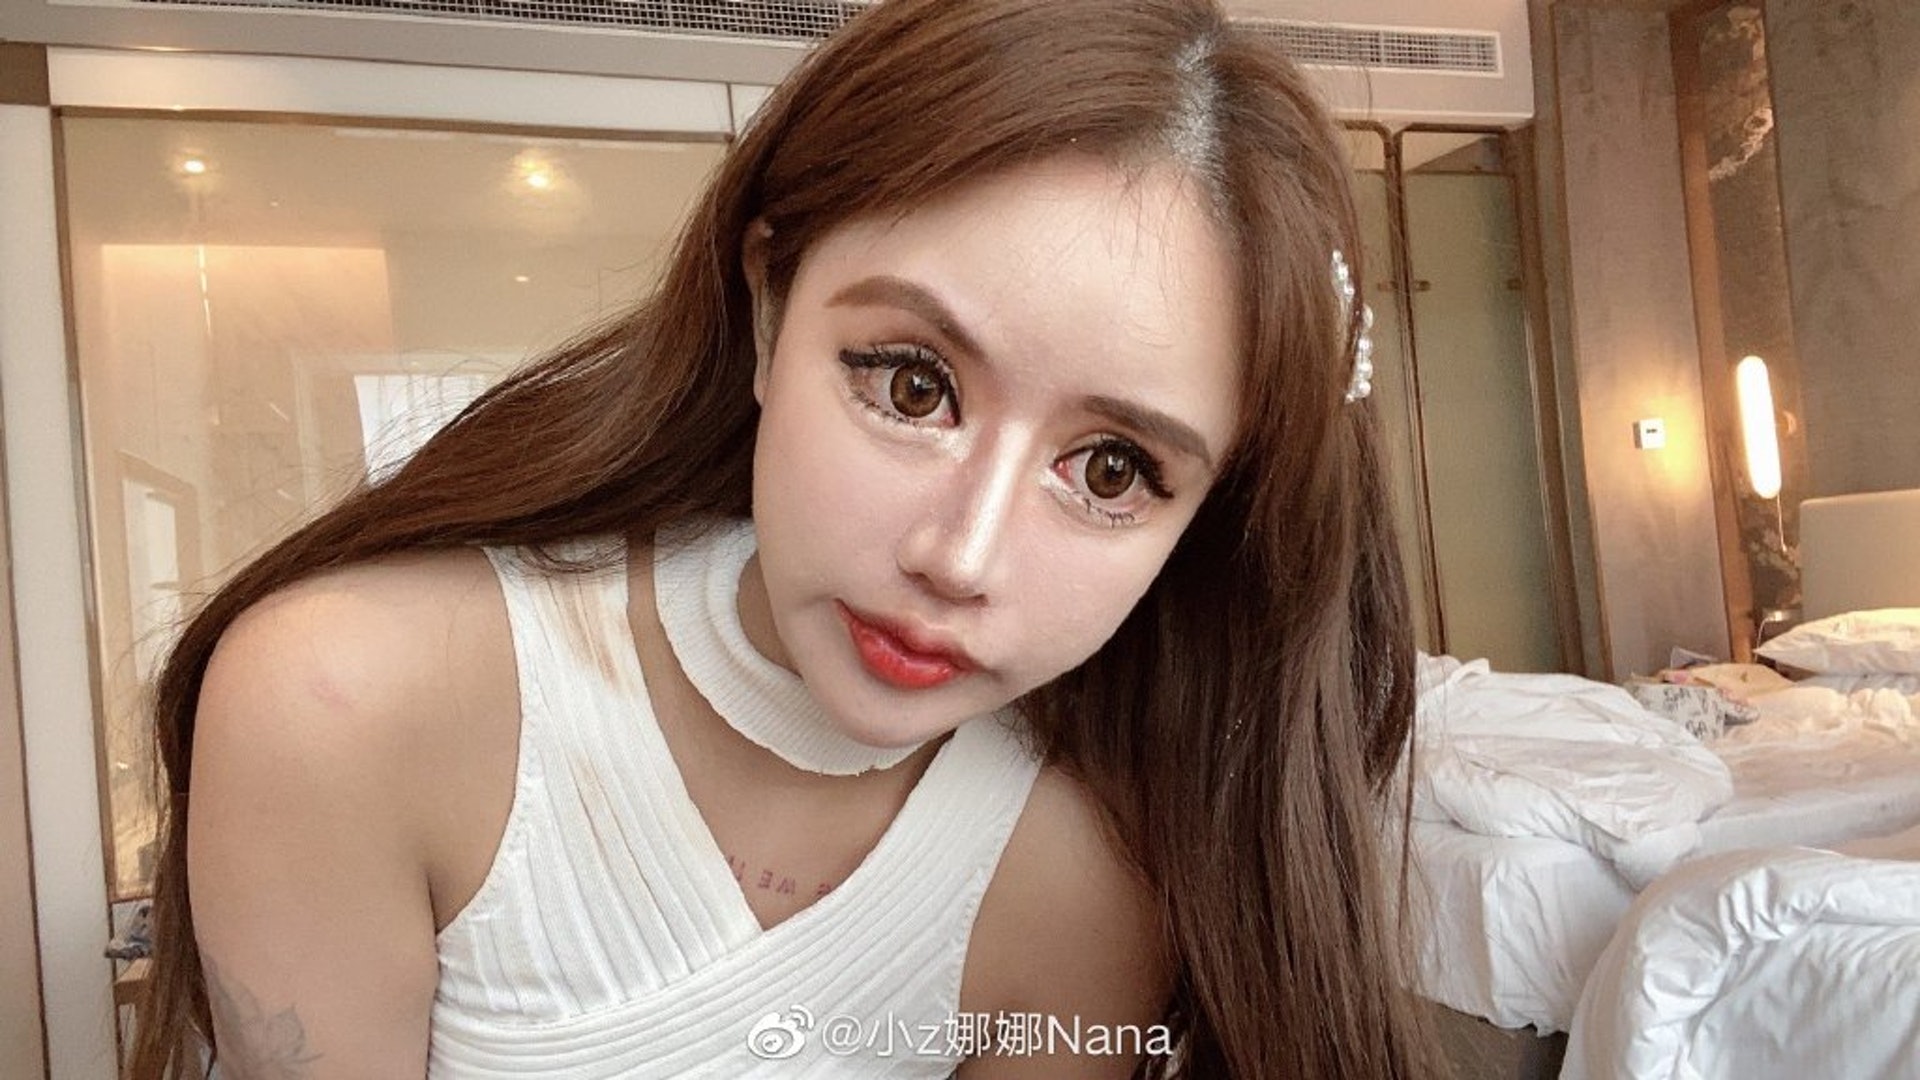 【画像あり】13歳から100回の美容整形を受けたナナさん、顔面が崩壊寸前 | sakamobi.com